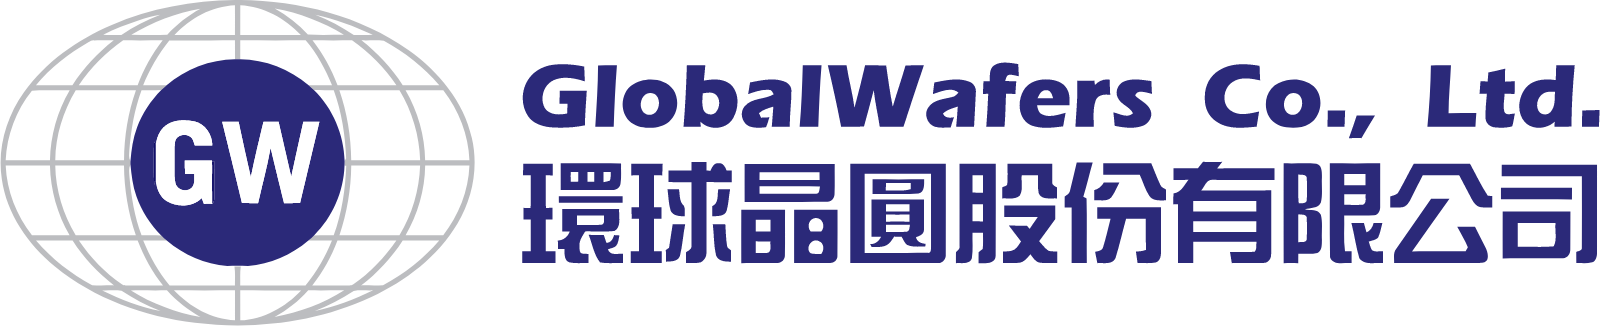 GlobalWafers logo large (transparent PNG)